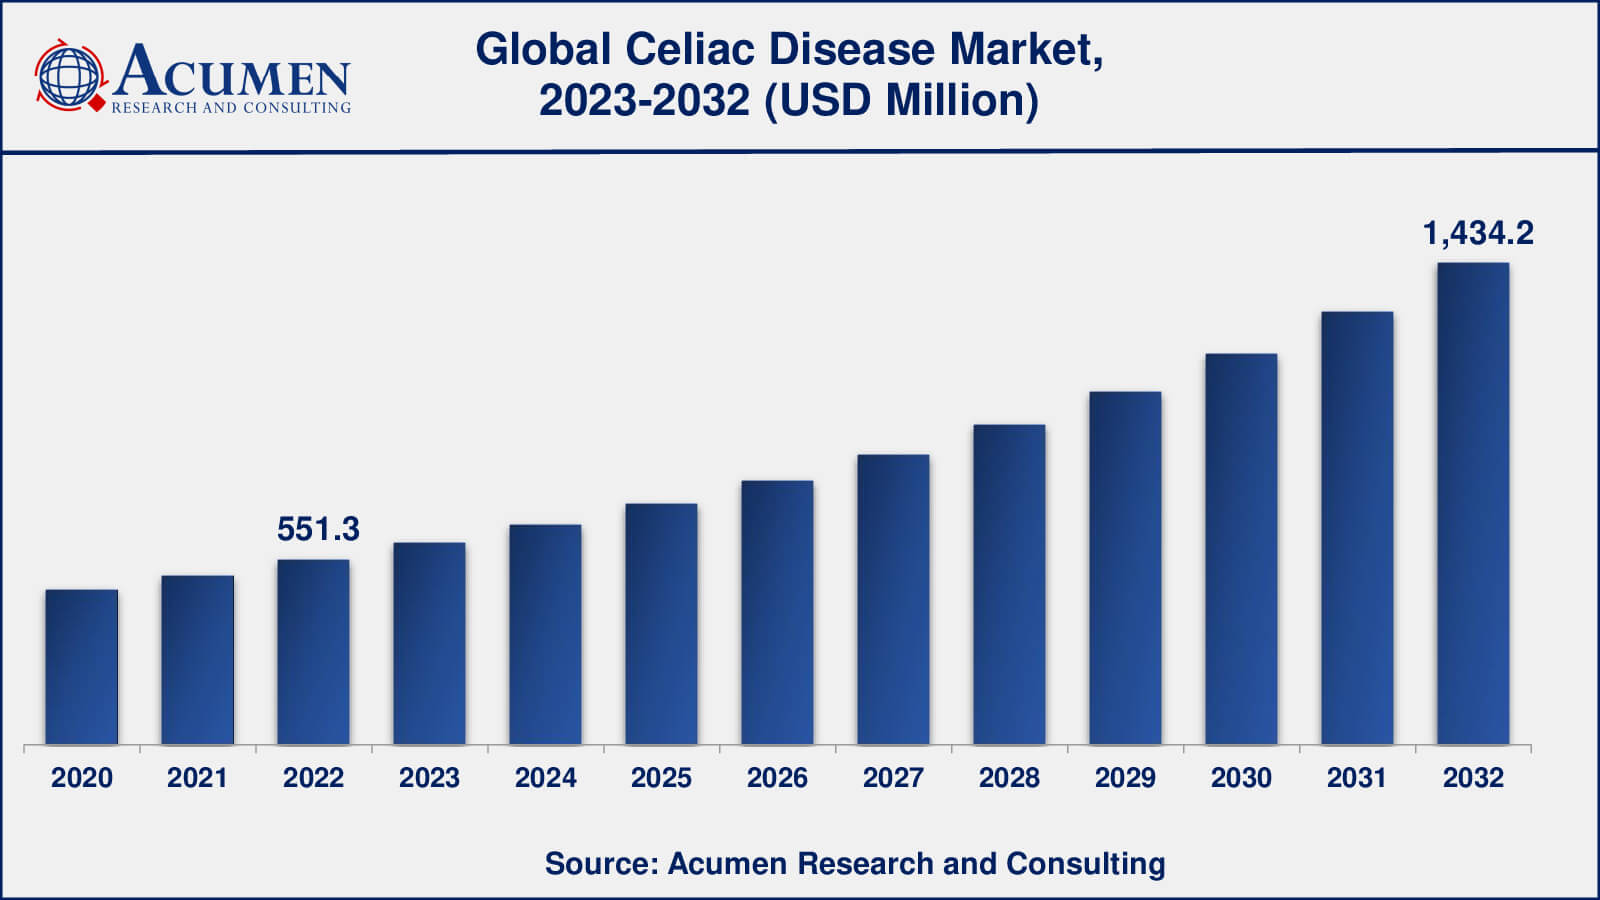 Celiac Disease Market Analysis Period